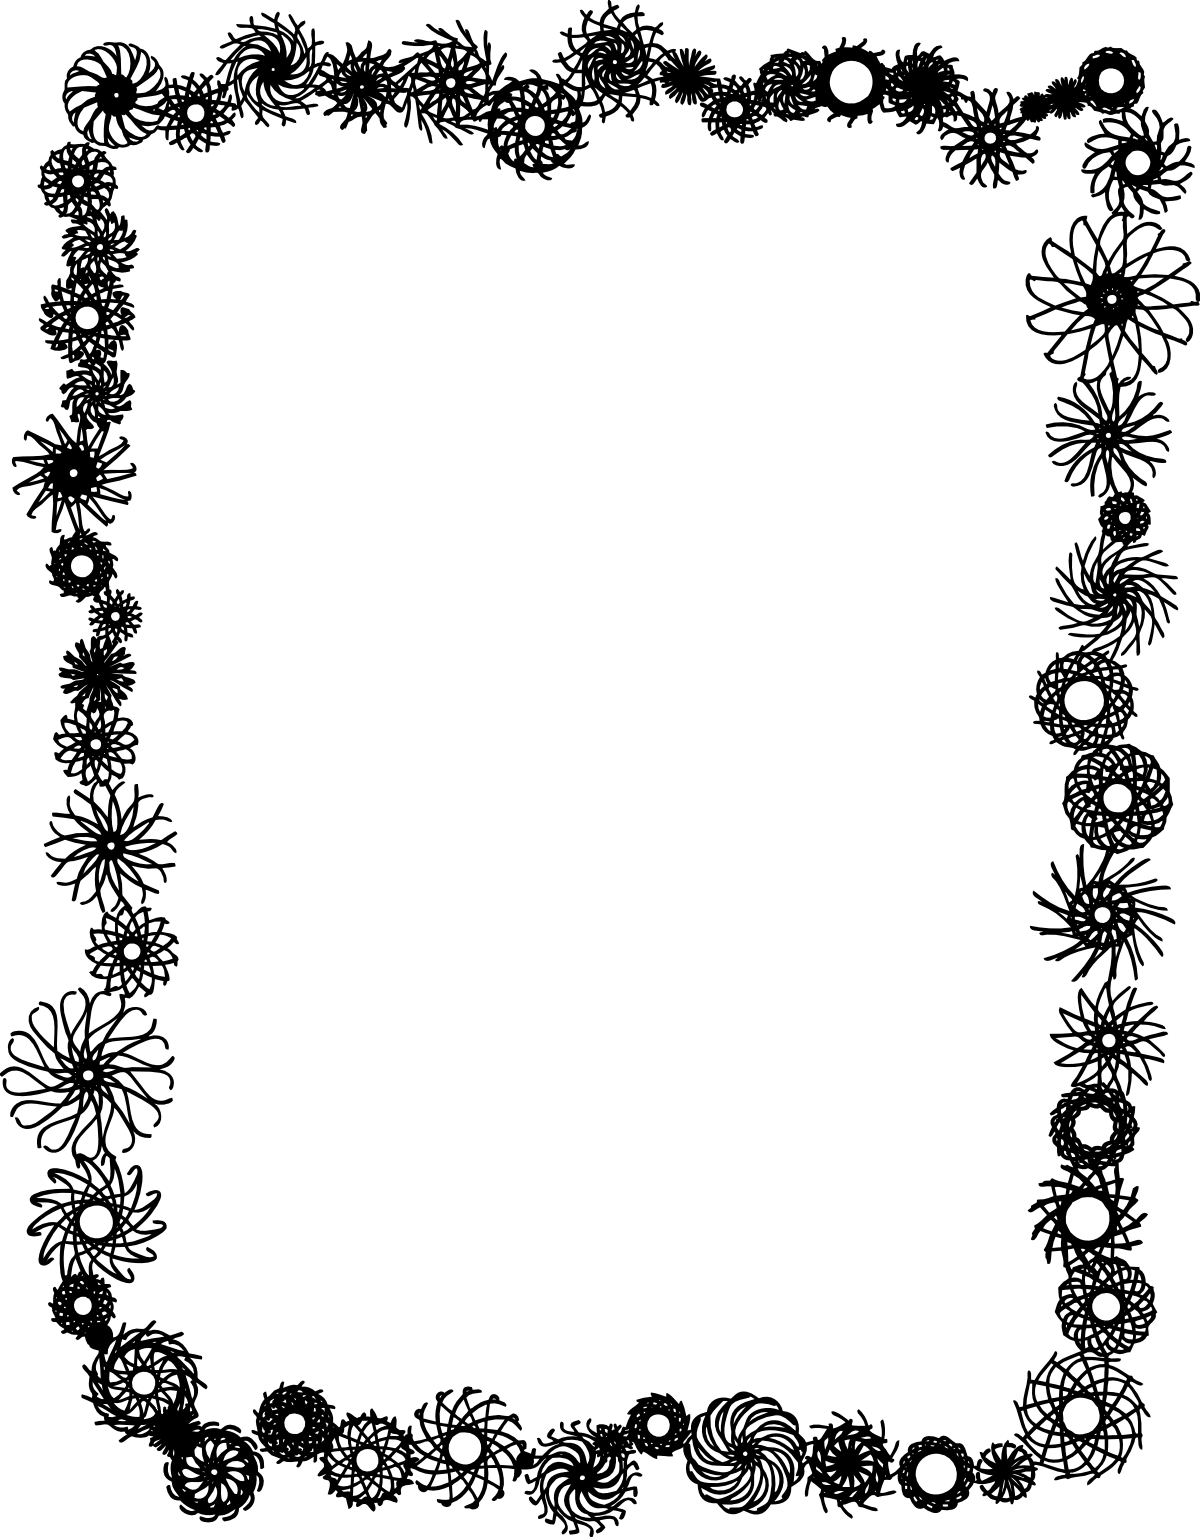 Black and White Flower Border Clip Art